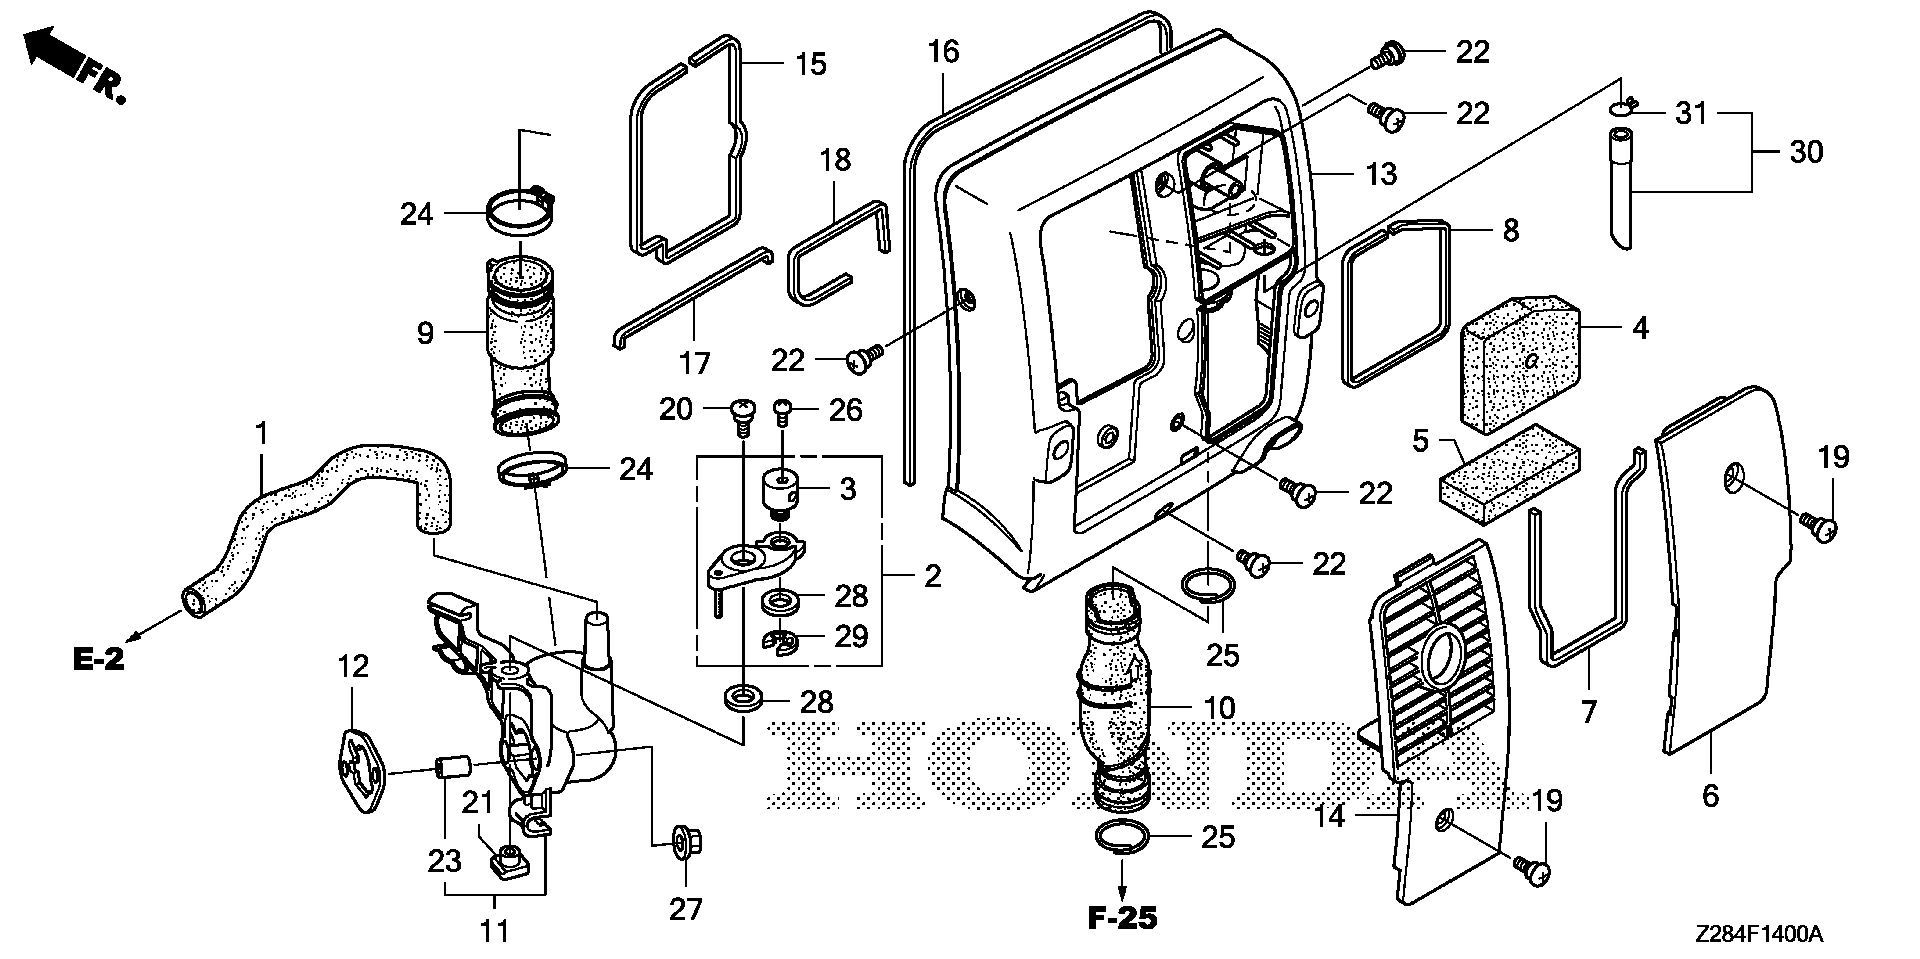 34 Honda Eu3000is Parts Diagram